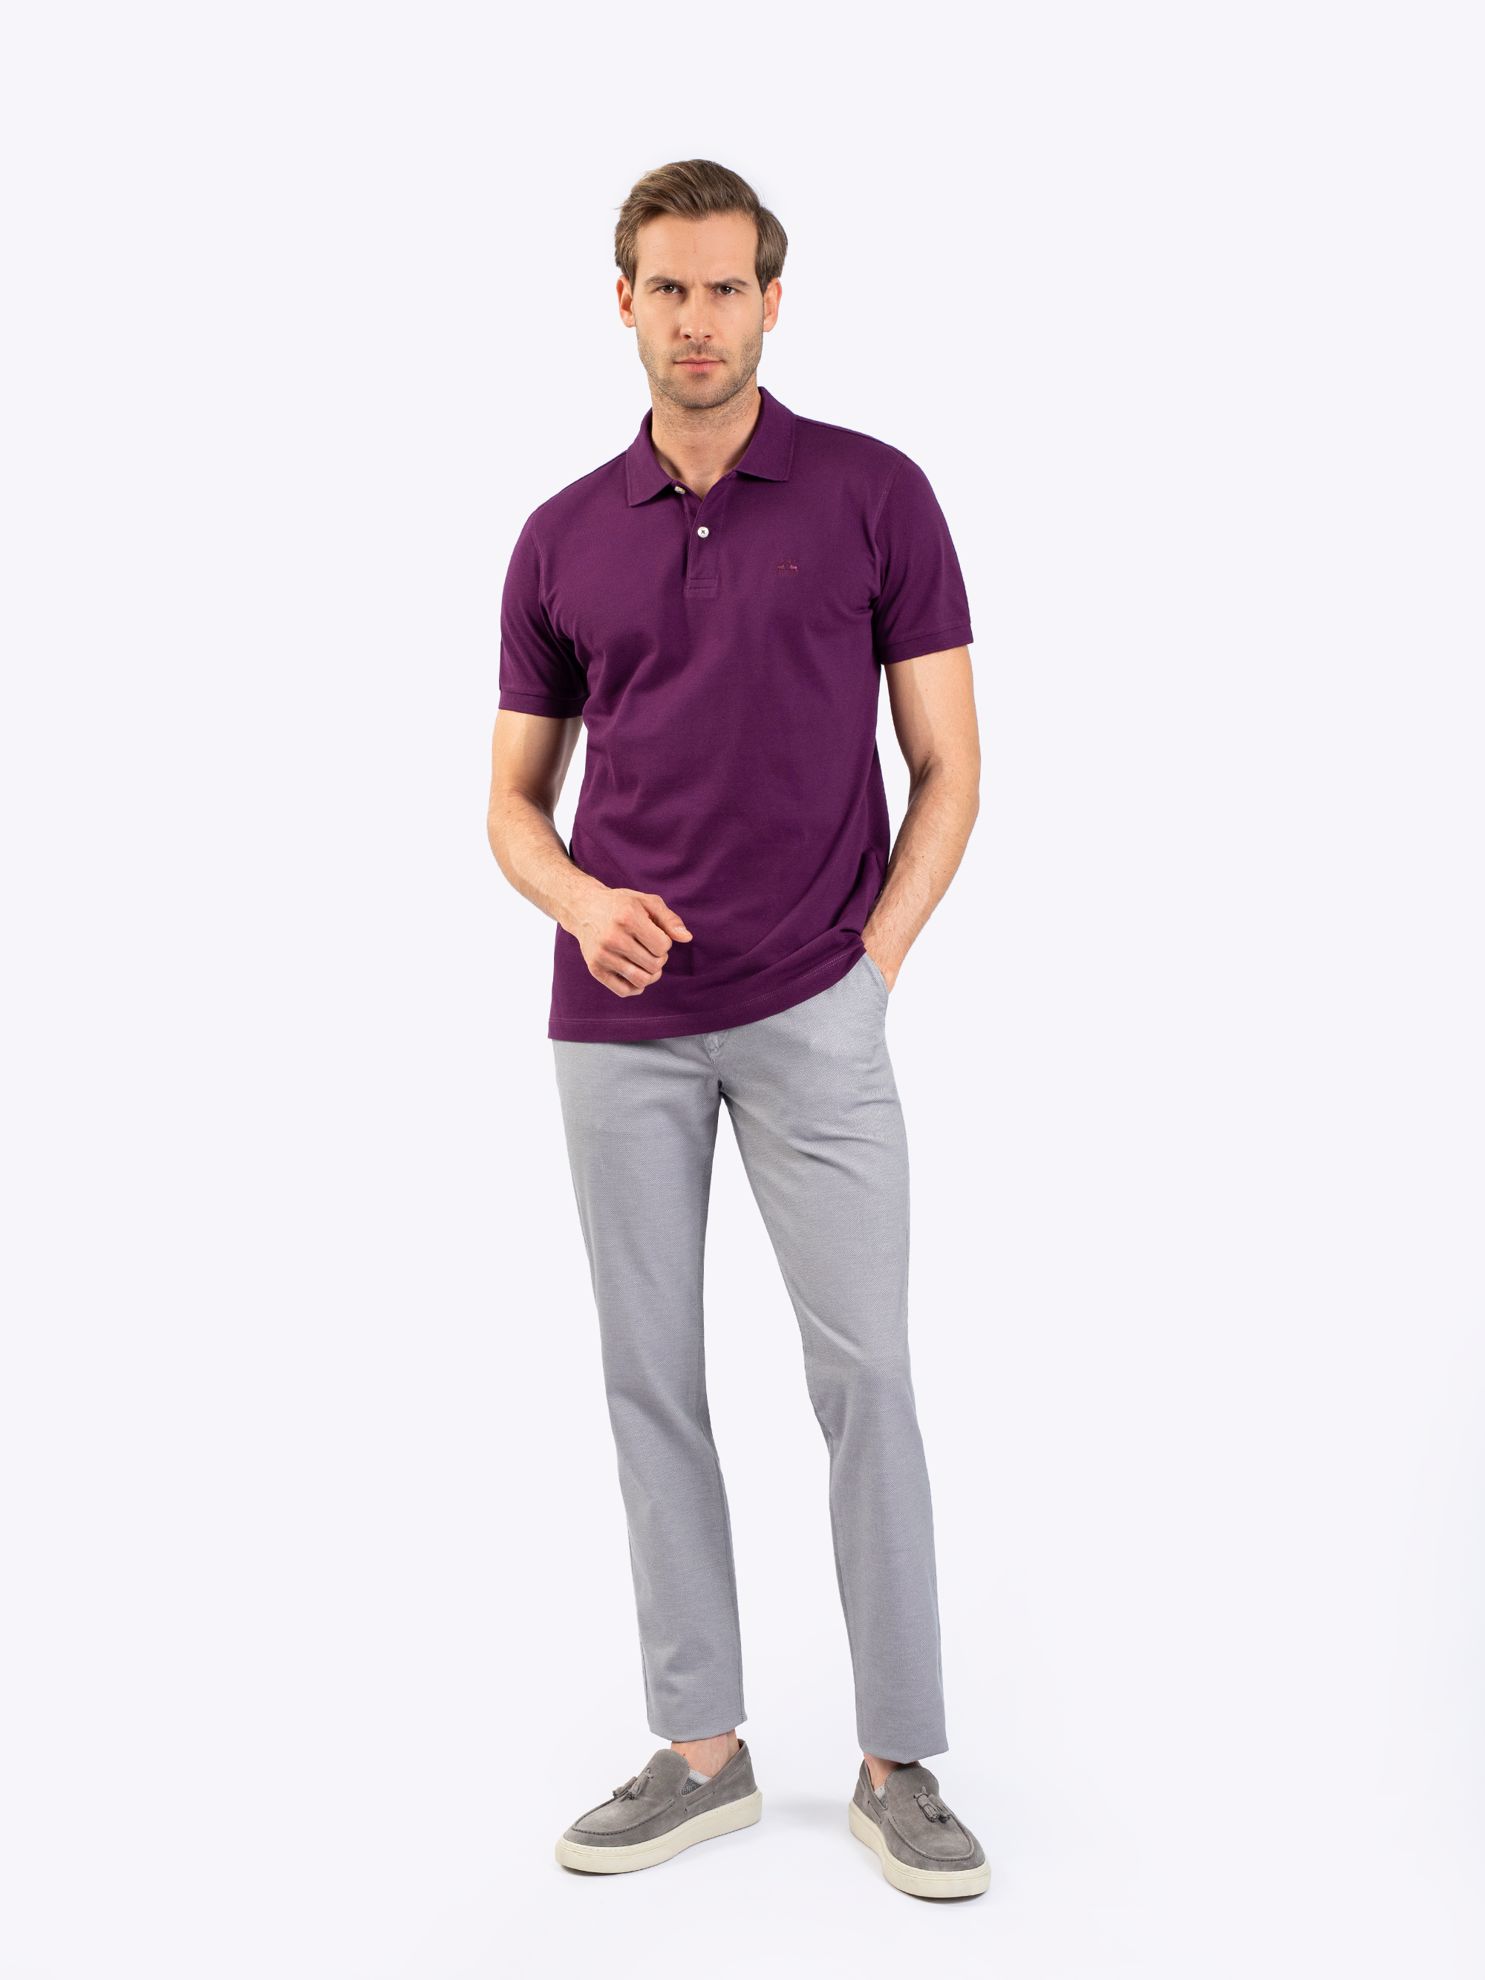 Karaca Erkek Slim Fit Polo Yaka Tişört-Mürdüm. ürün görseli